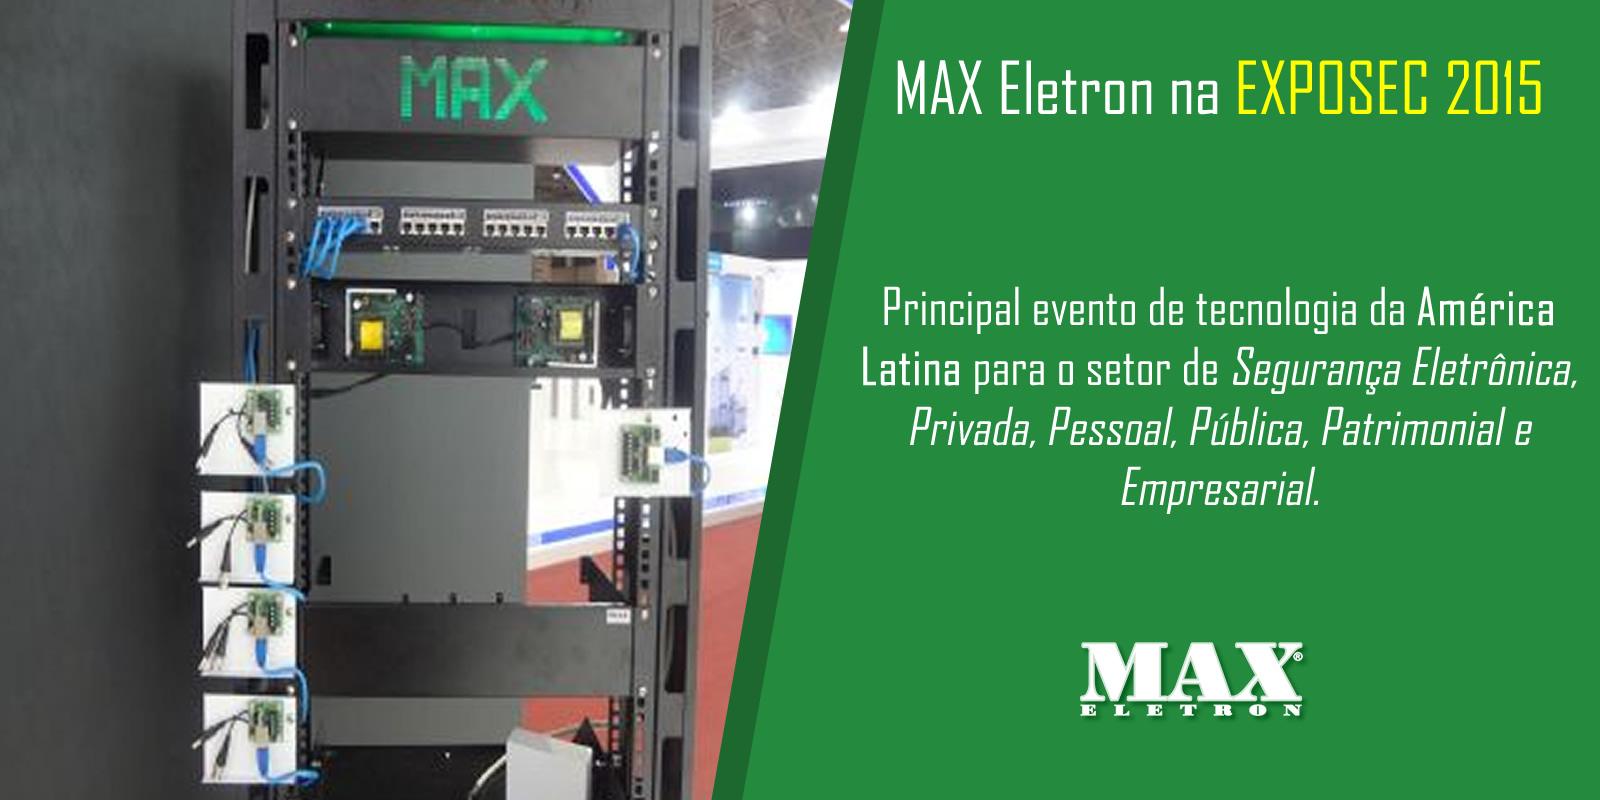 MAX Eletron na EXPOSEC 2015 em São Paulo